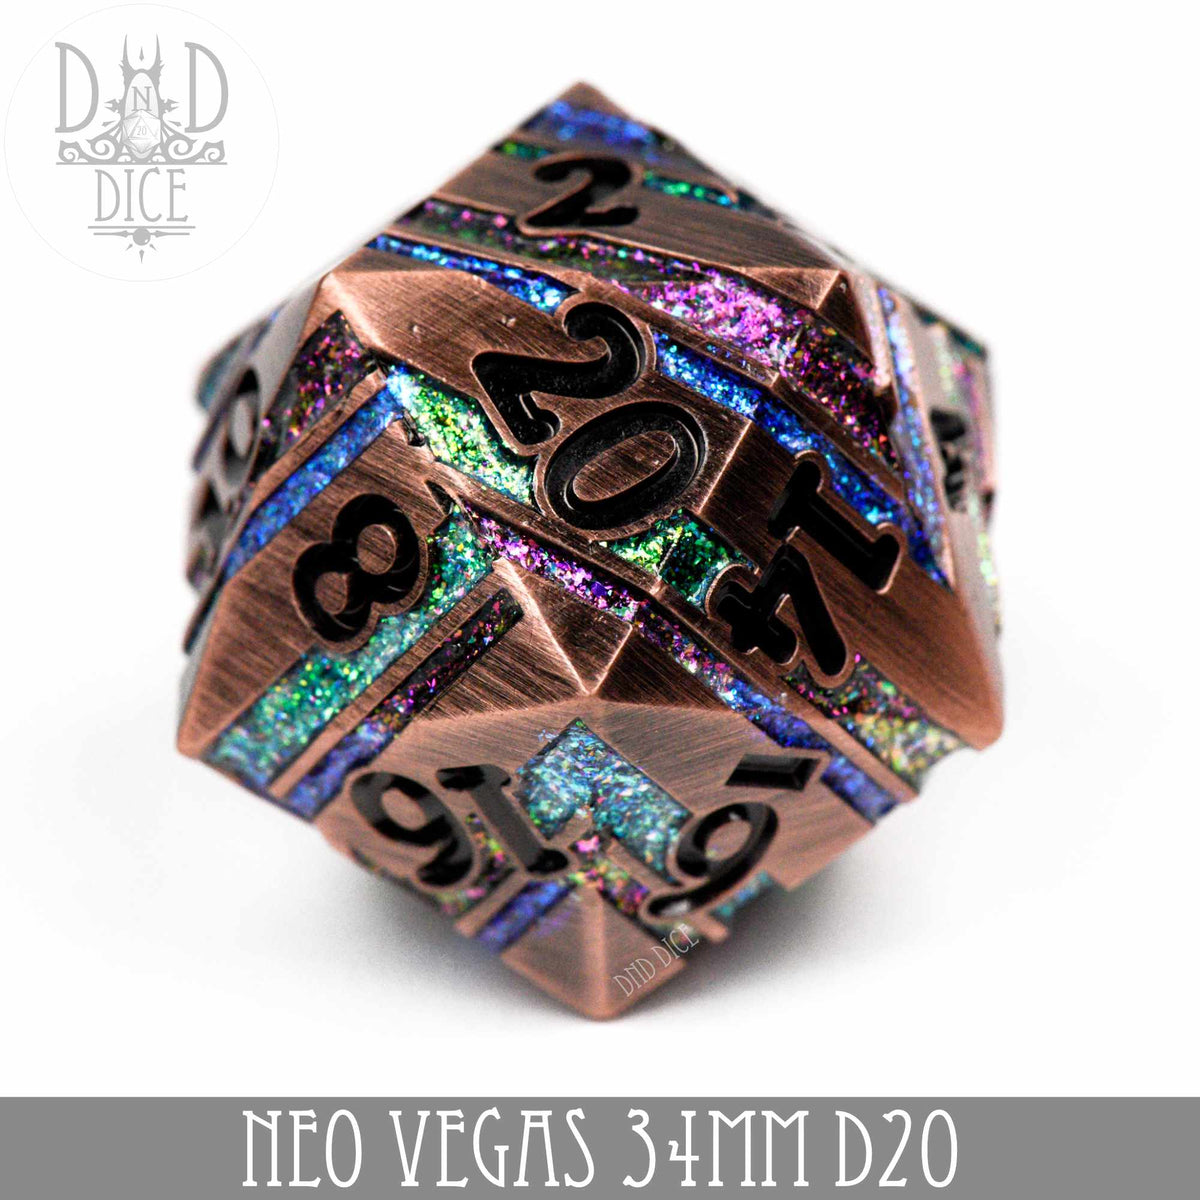 Neo Vegas 34mm D20 [Metal]